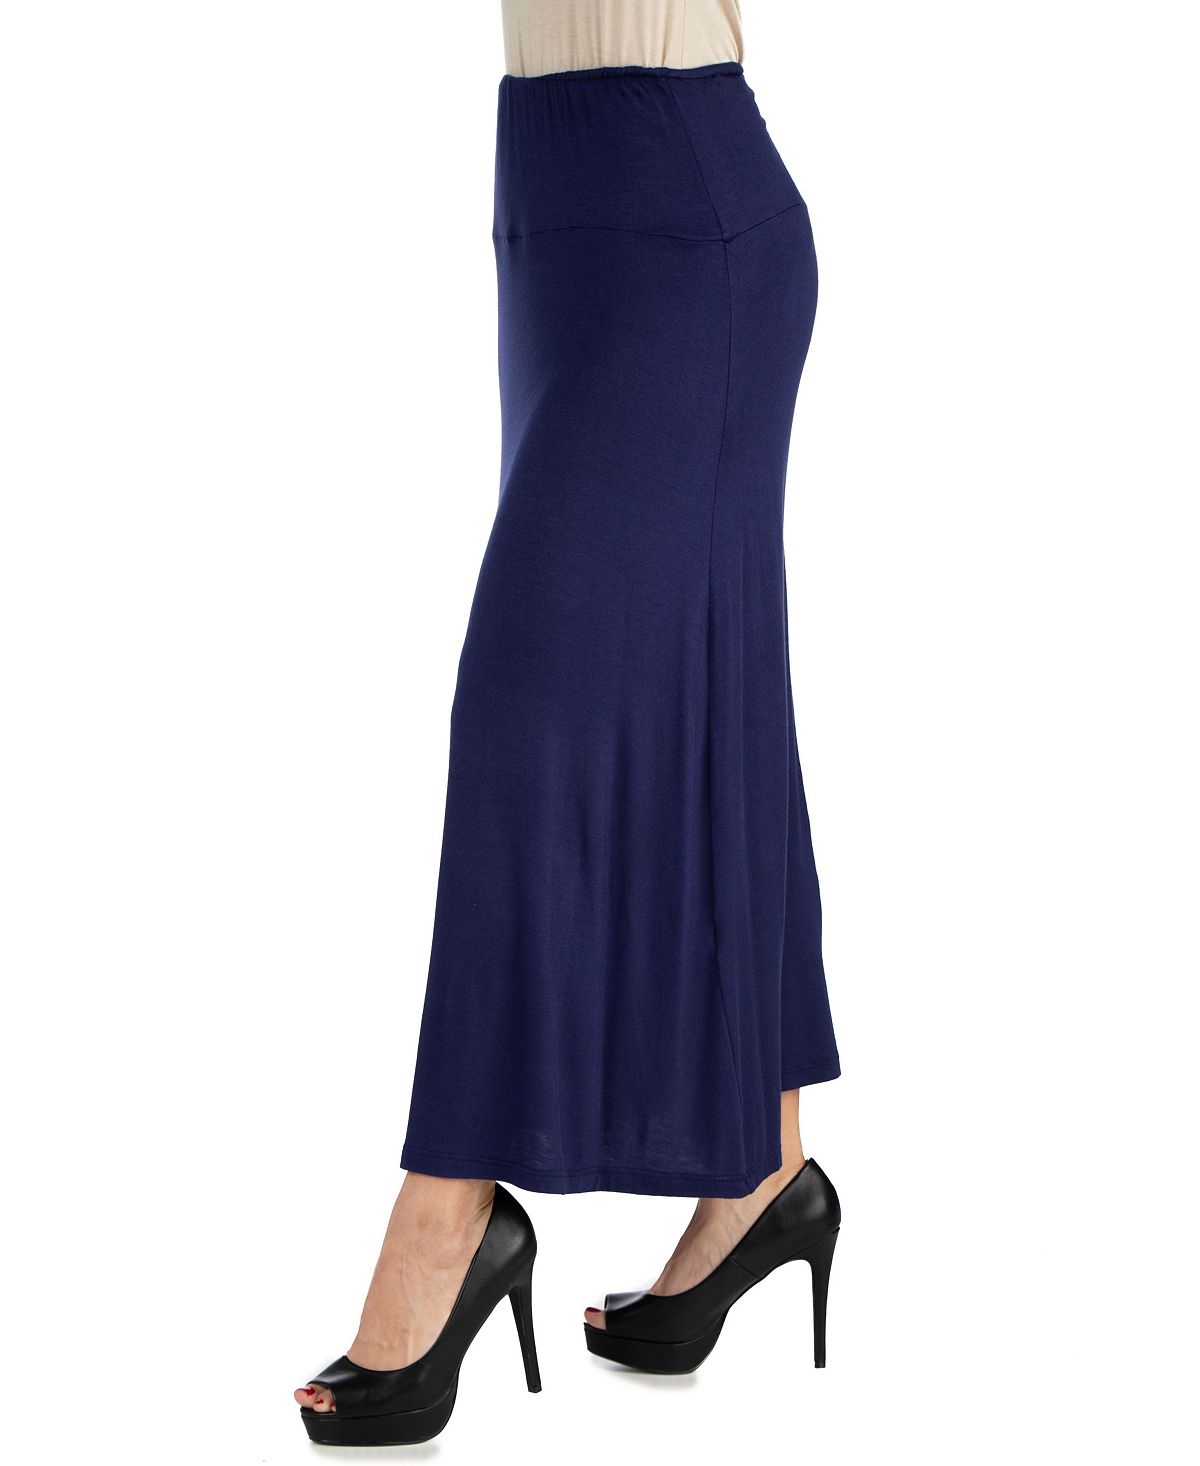 Женская макси-юбка с эластичной резинкой на талии 24seven Comfort Apparel, темно-синий кроссовки kinetix comfort keya navy